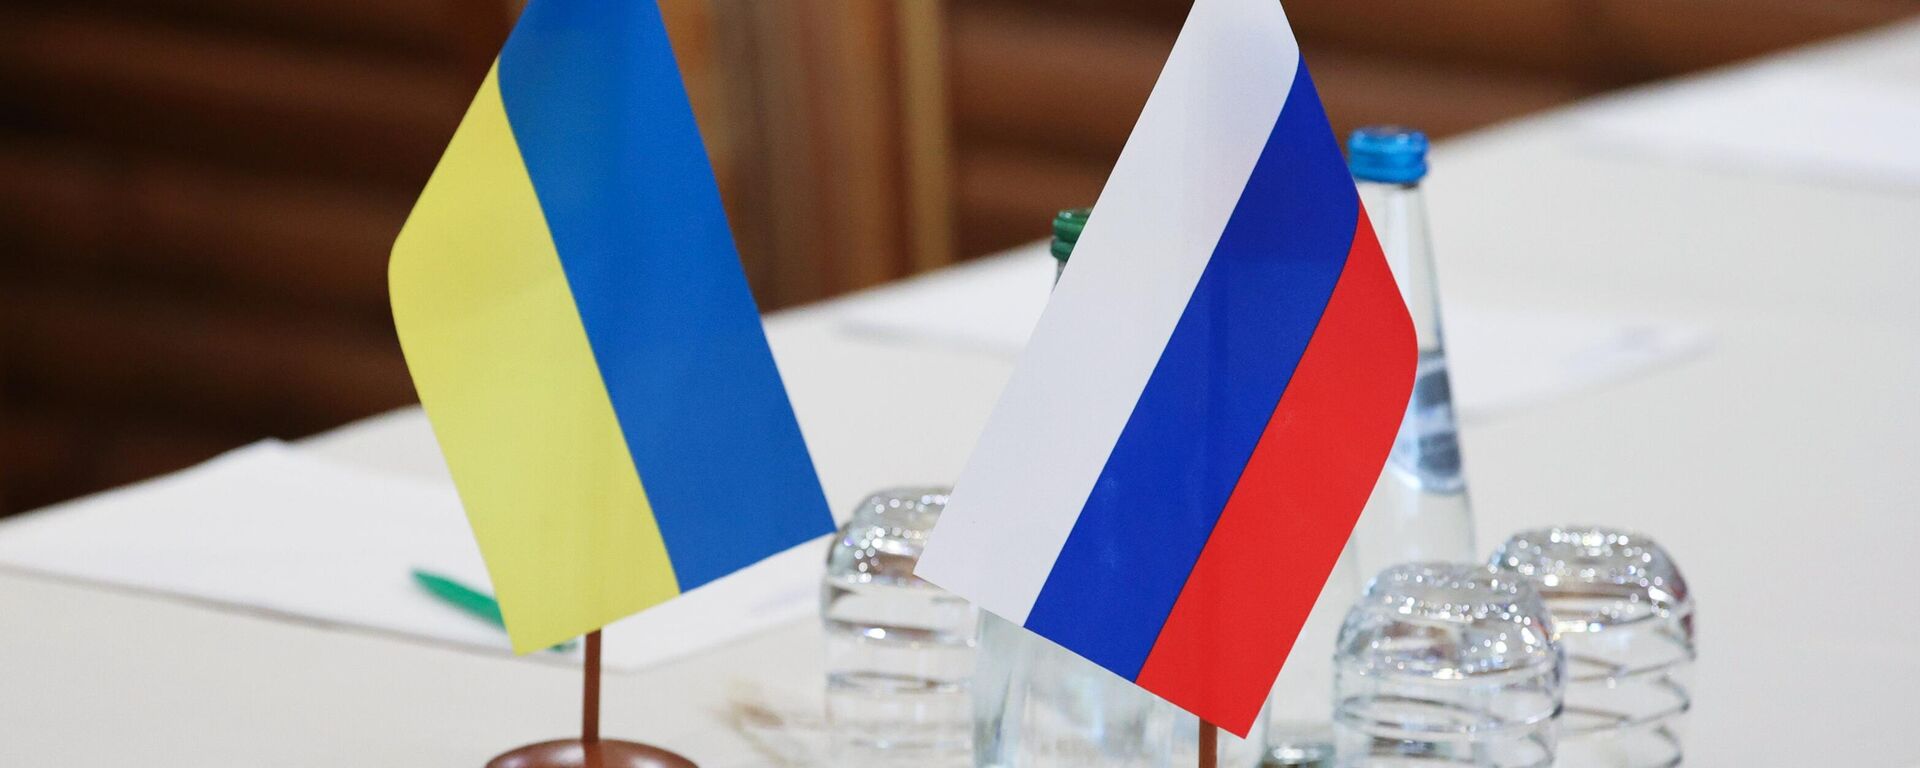 Banderas de Rusia y Ucrania durante las negociaciones celebradas en Bielorrusia el 3 de marzo  - Sputnik Mundo, 1920, 03.03.2022